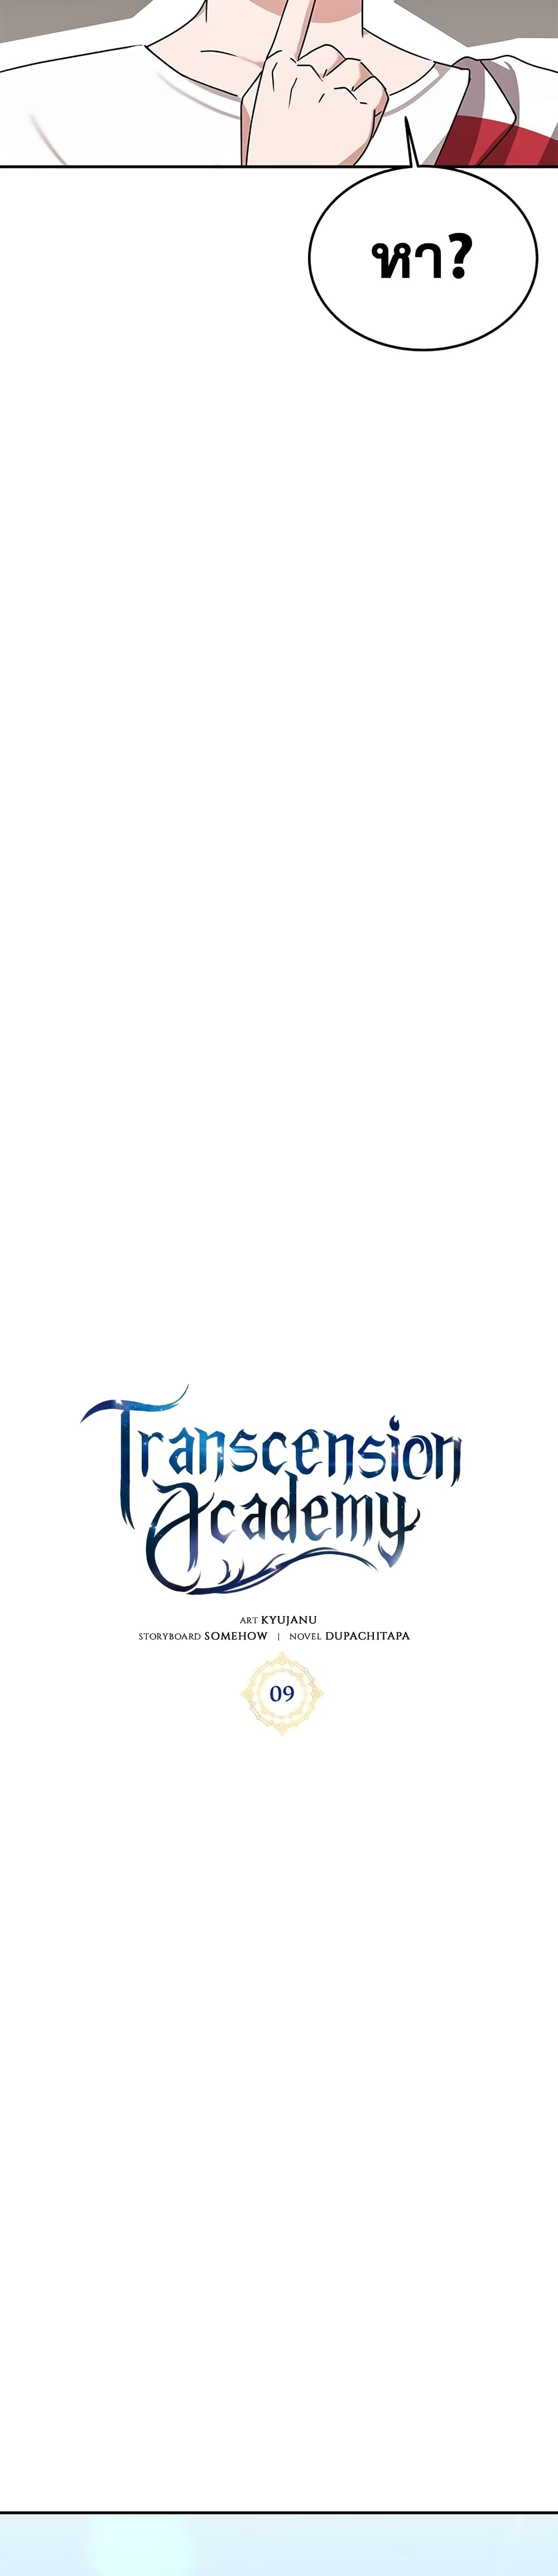 Transcension-Academy-9_13.jpg